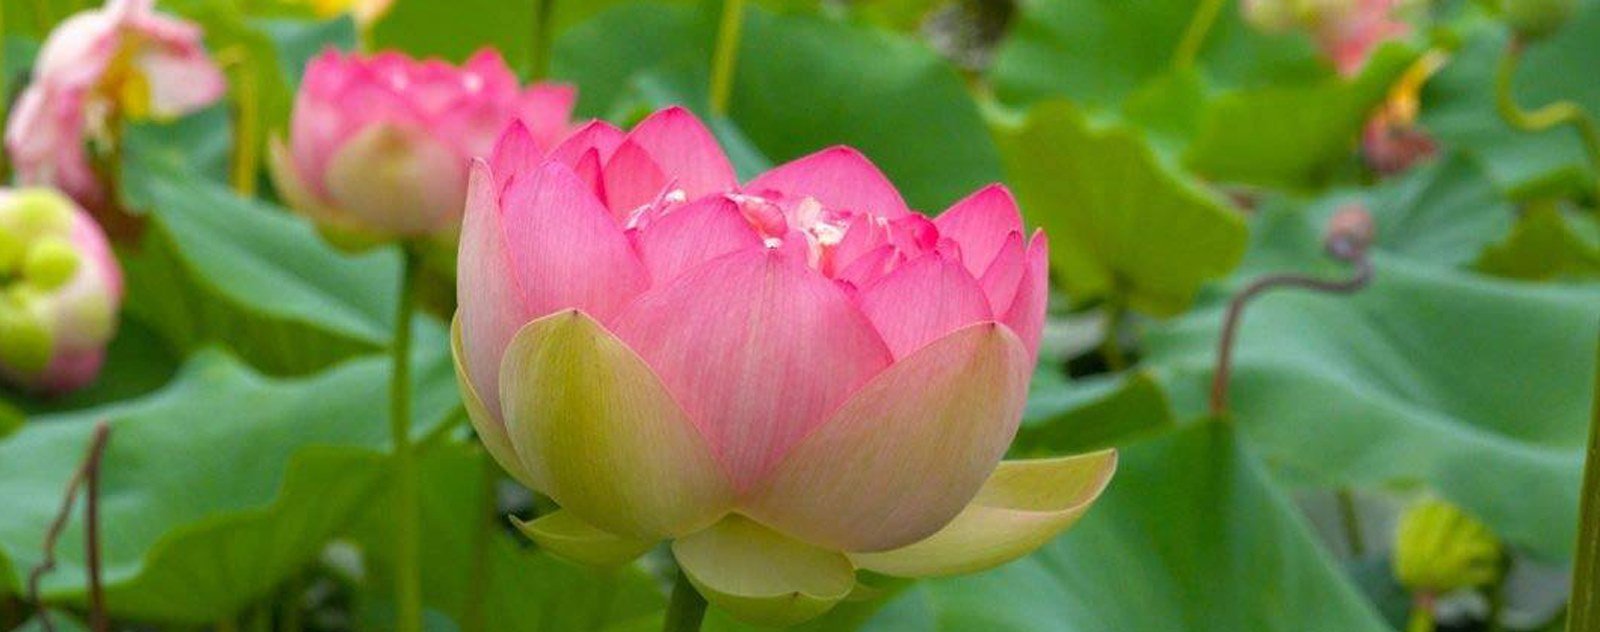 Lotus sacré et feuille de lotus